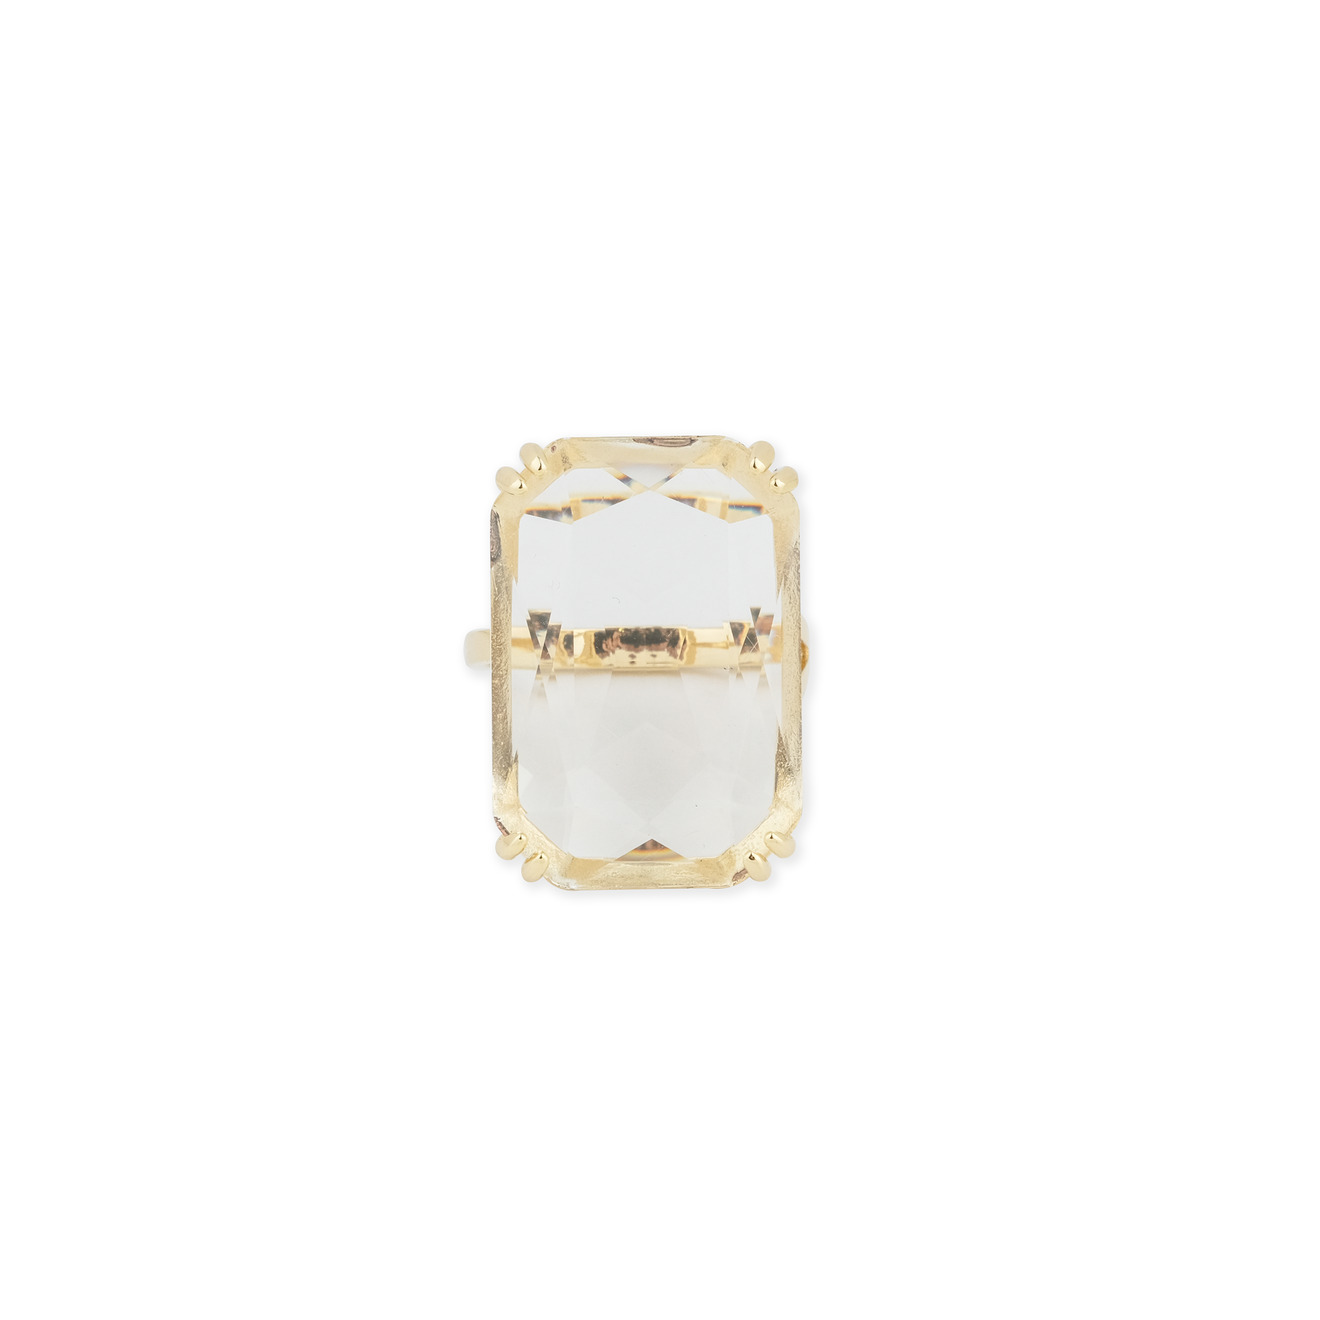 Herald Percy Золотистое кольцо с прямоугольным кристаллом herald percy золотистая цепочка с подвеской прямоугольником с кристаллом